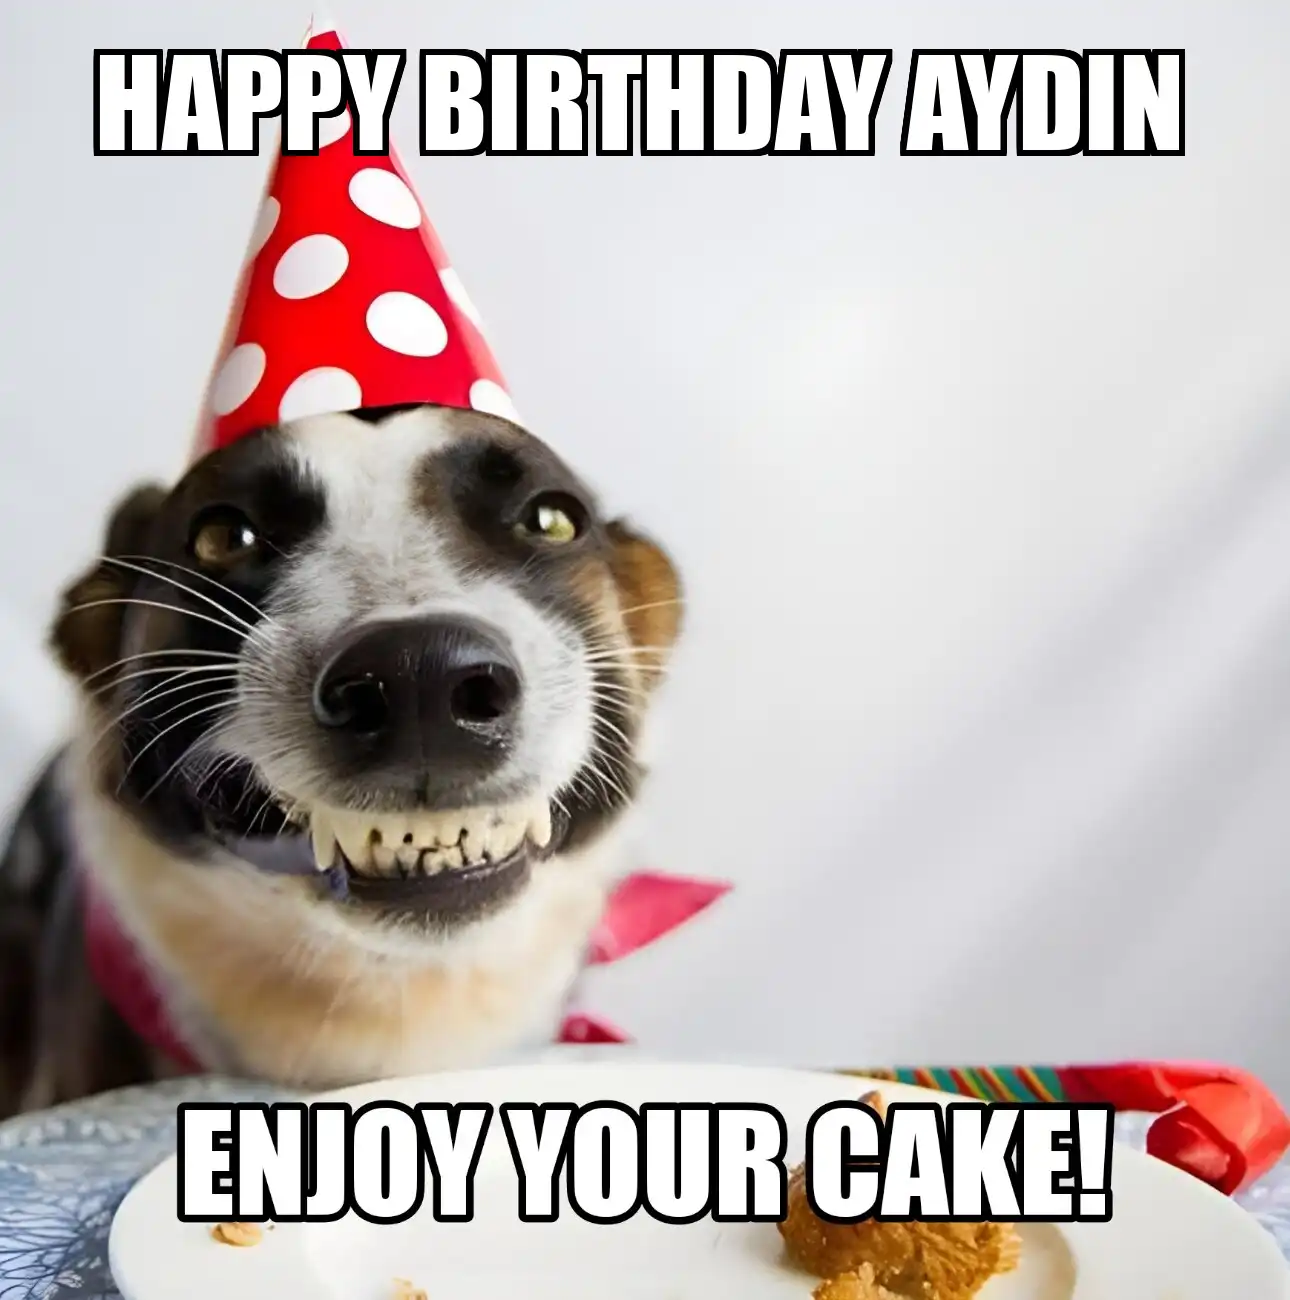 Happy Birthday Aydin Enjoy Your Cake Dog Meme